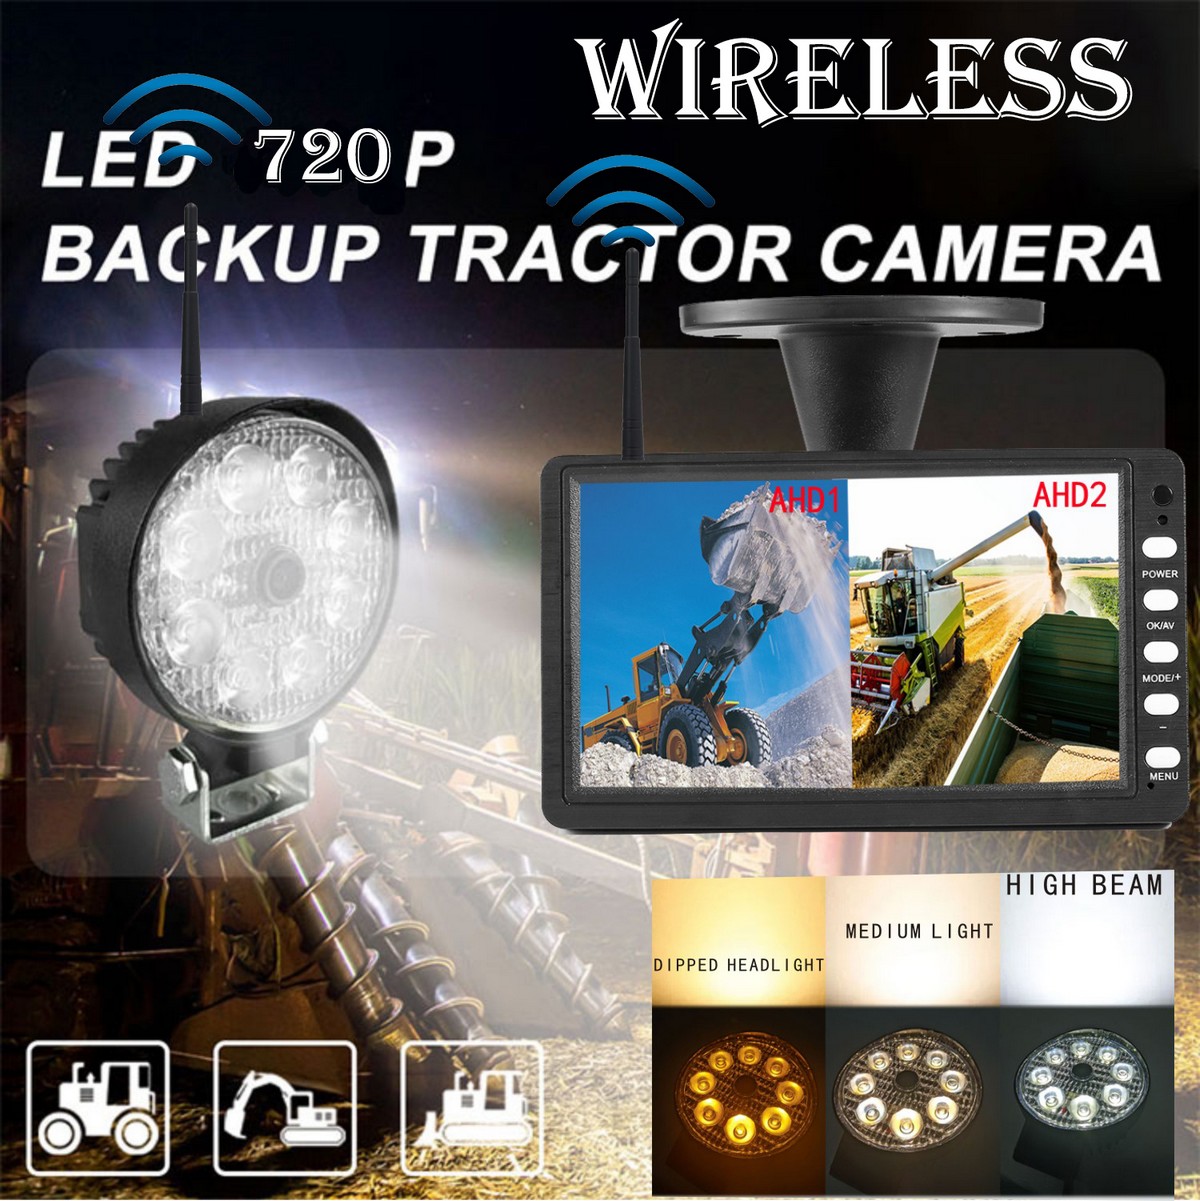 Kit de sauvegarde - Caméra Wifi avec lumière LED blanche puissante et nombreuses fonctions